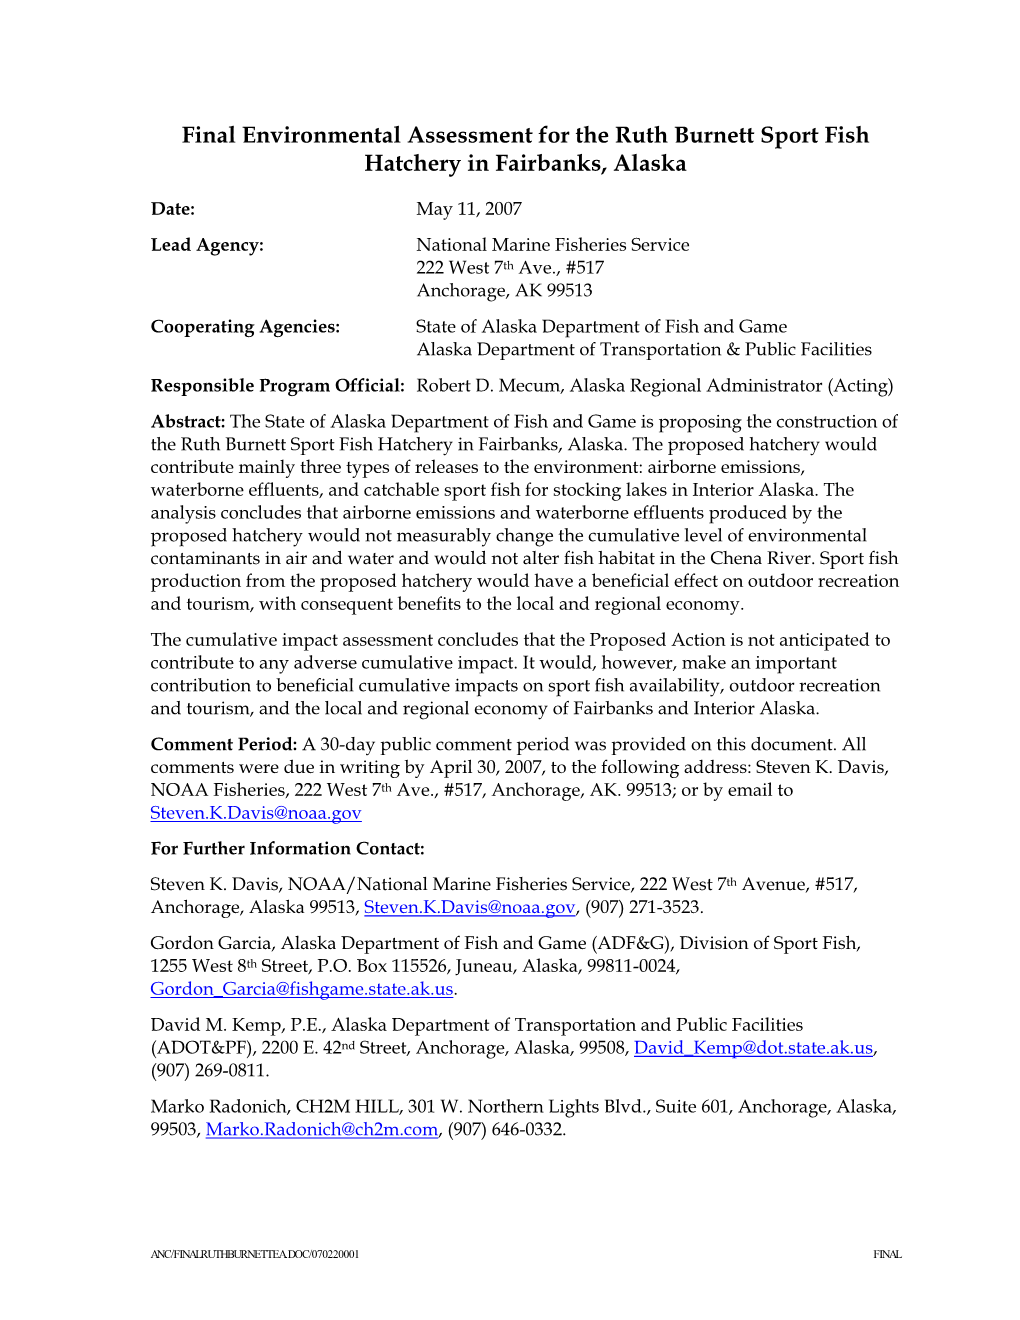 Final Environmental Assessment for the Ruth Burnett Sport Fish Hatchery in Fairbanks, Alaska